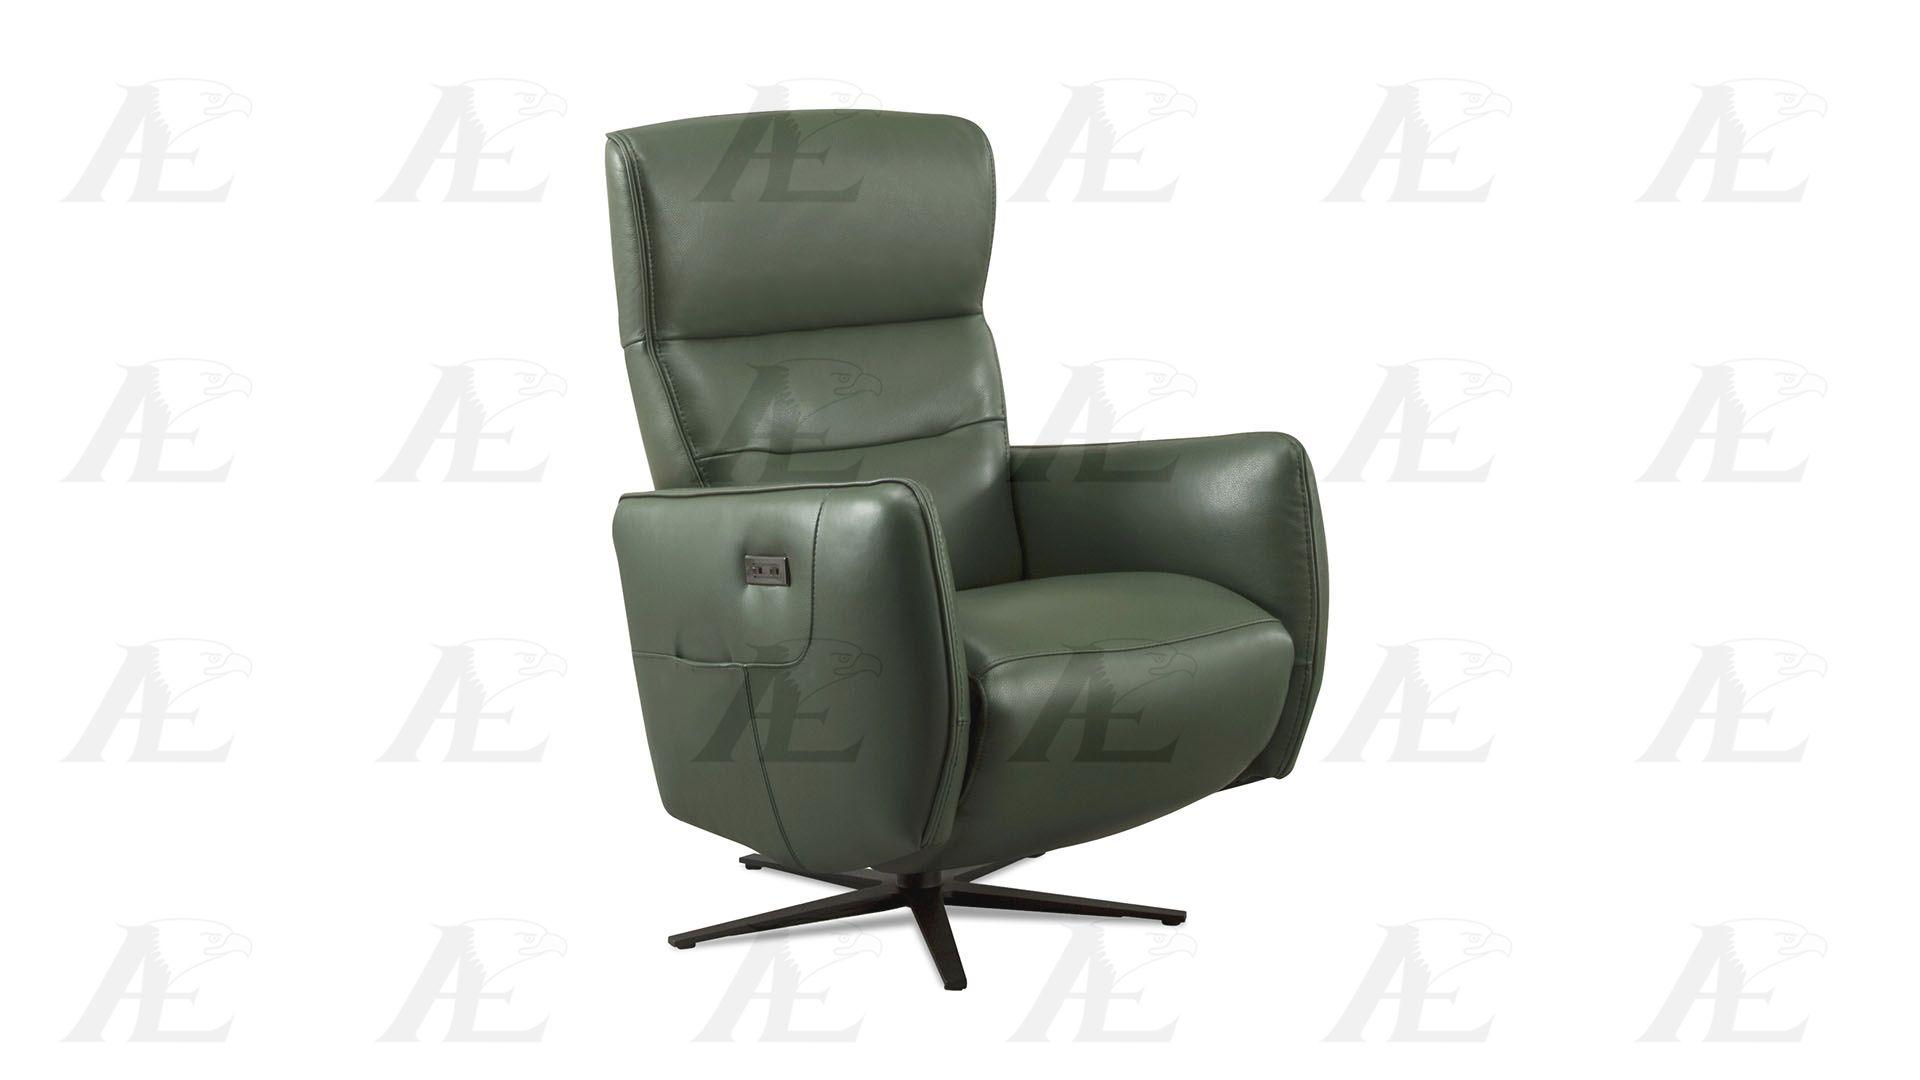 

    
EK-CH036-GN Reclining Chair
